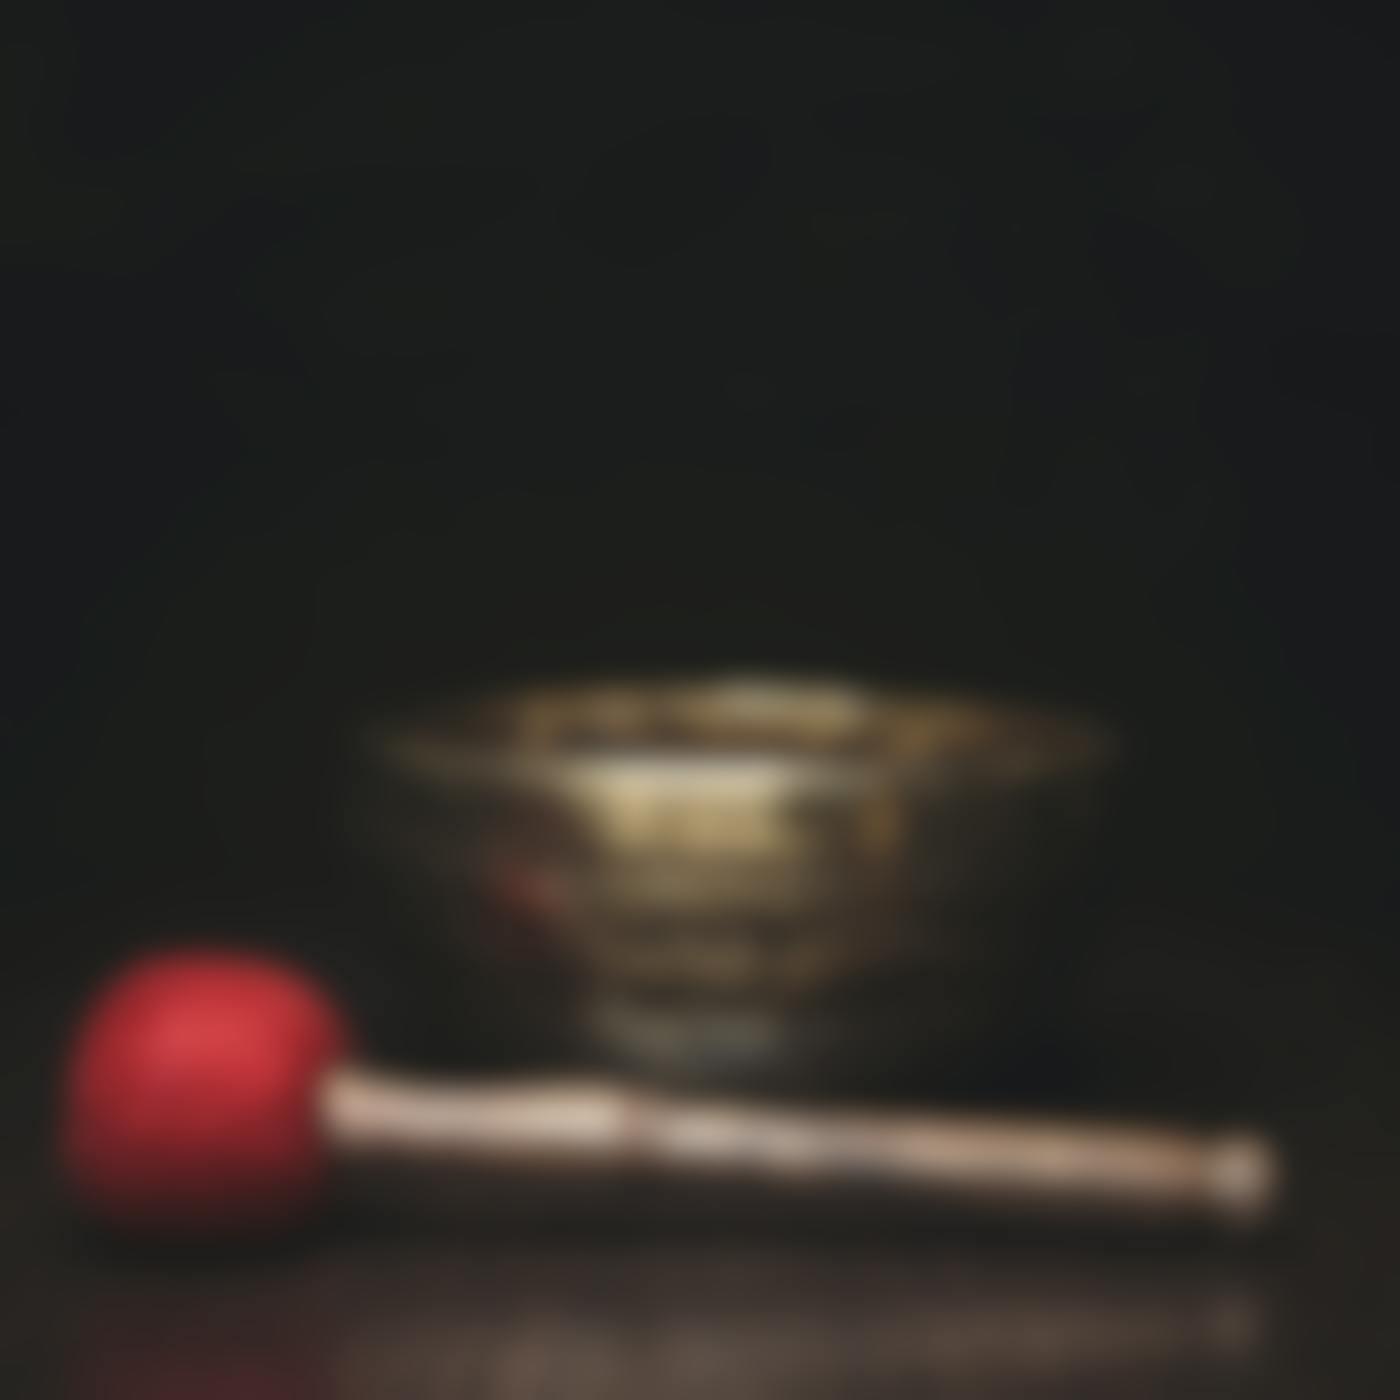 A Tibetan prayer bowl and hammer